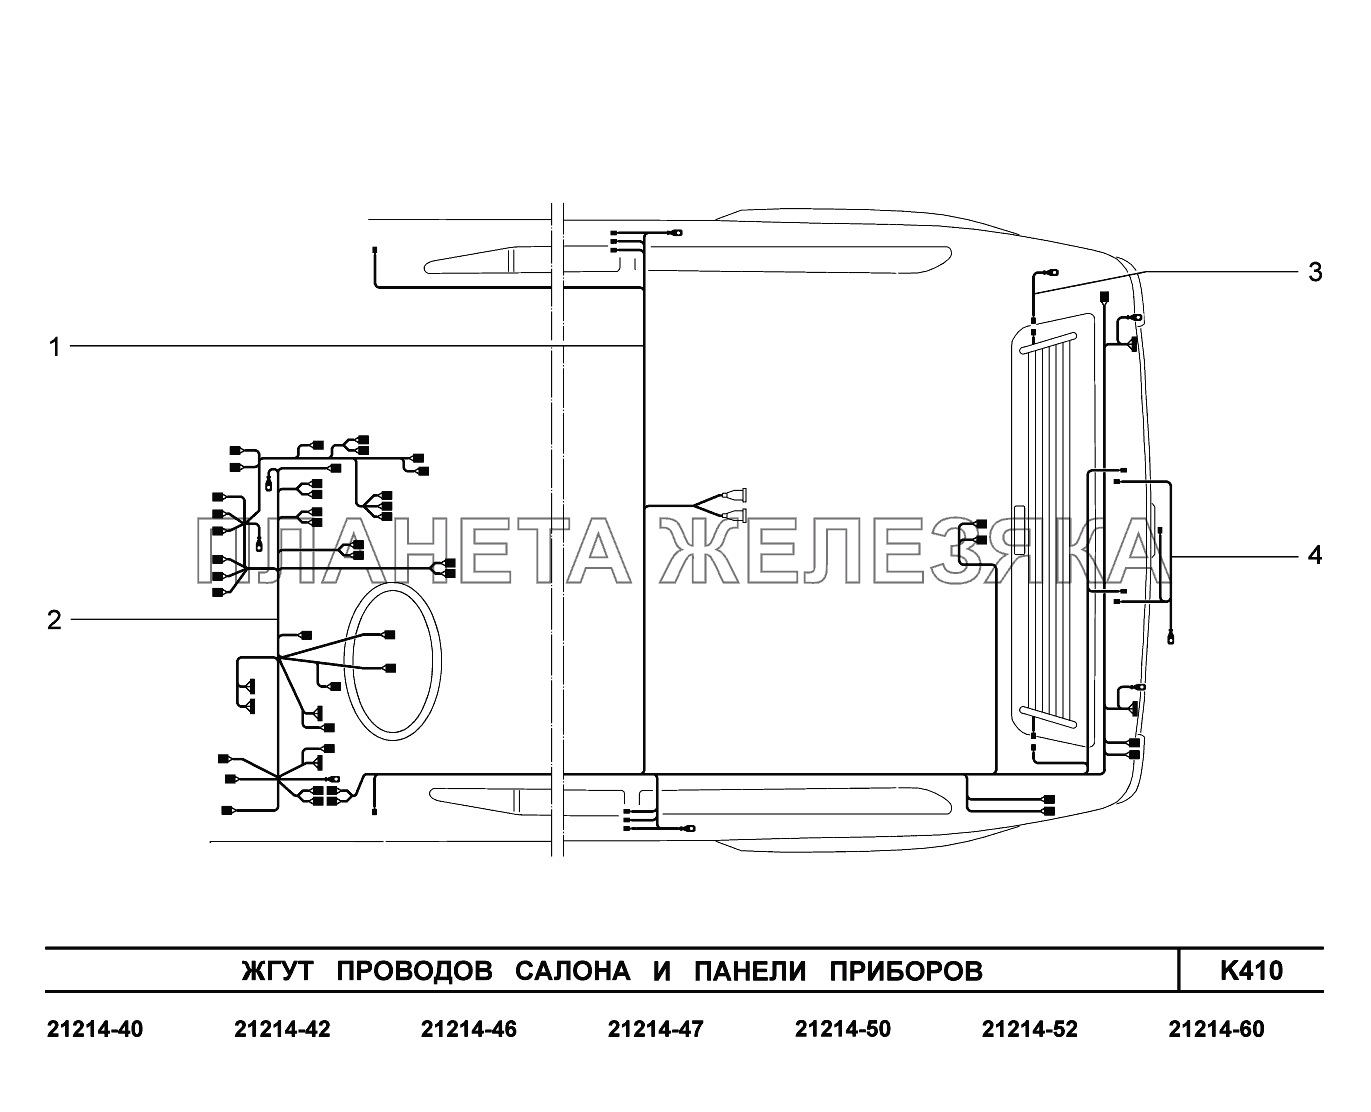 K410. Жгуты проводов салона и панели приборов Lada 4x4 Urban